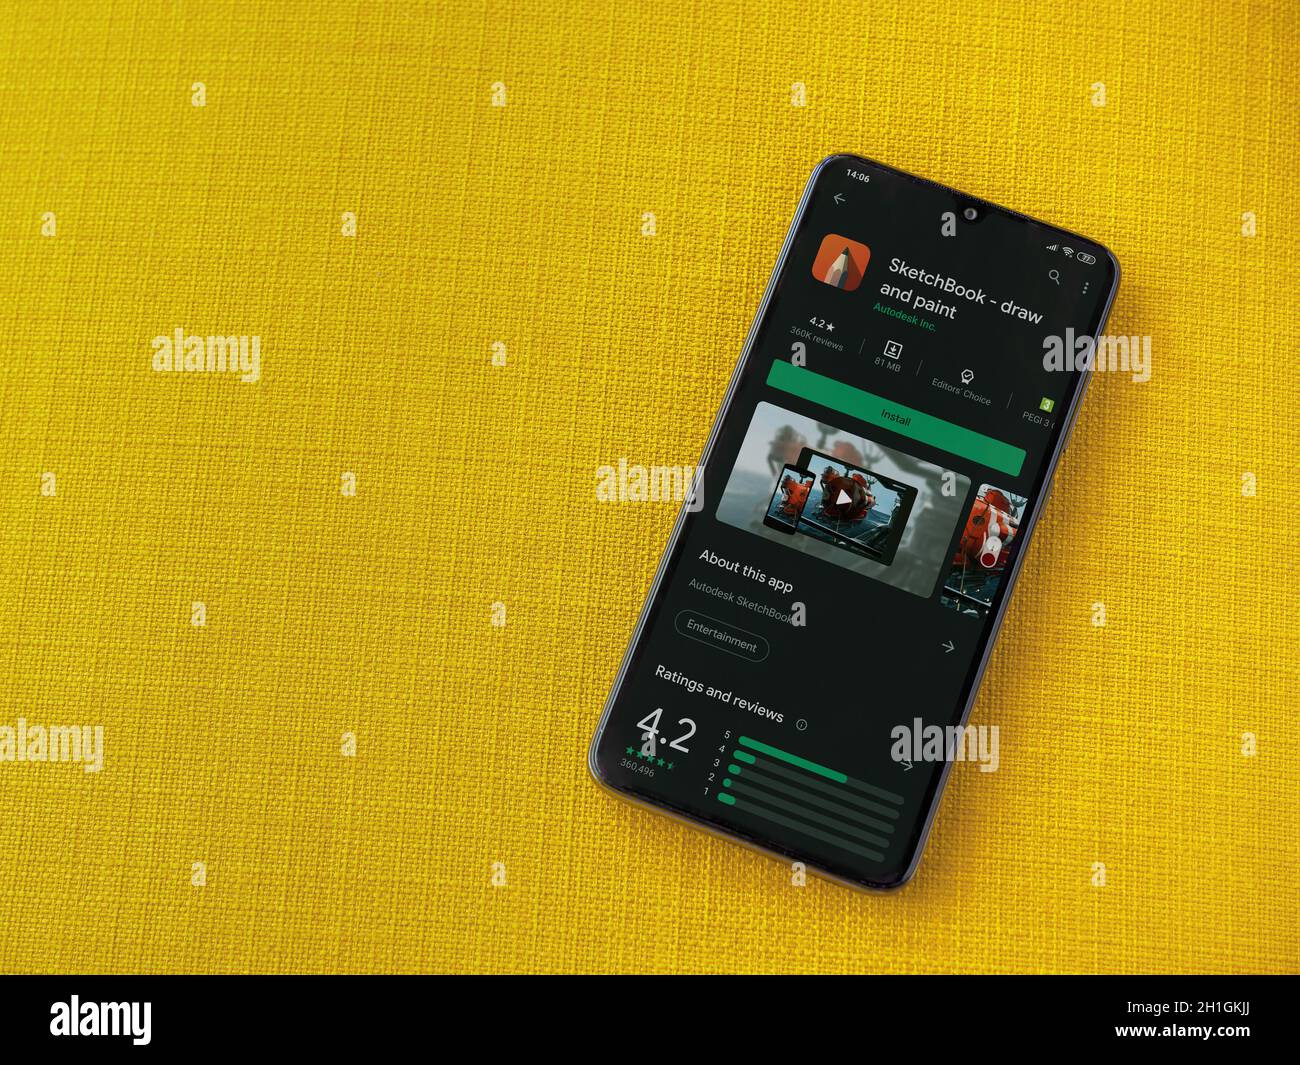 LOD, Israel - 8. Juli 2020: Autodesk Sketchbook - zeichnen und malen App  Play Store-Seite auf dem Display eines schwarzen mobilen Smartphones auf  einem gelben Stoff BA Stockfotografie - Alamy